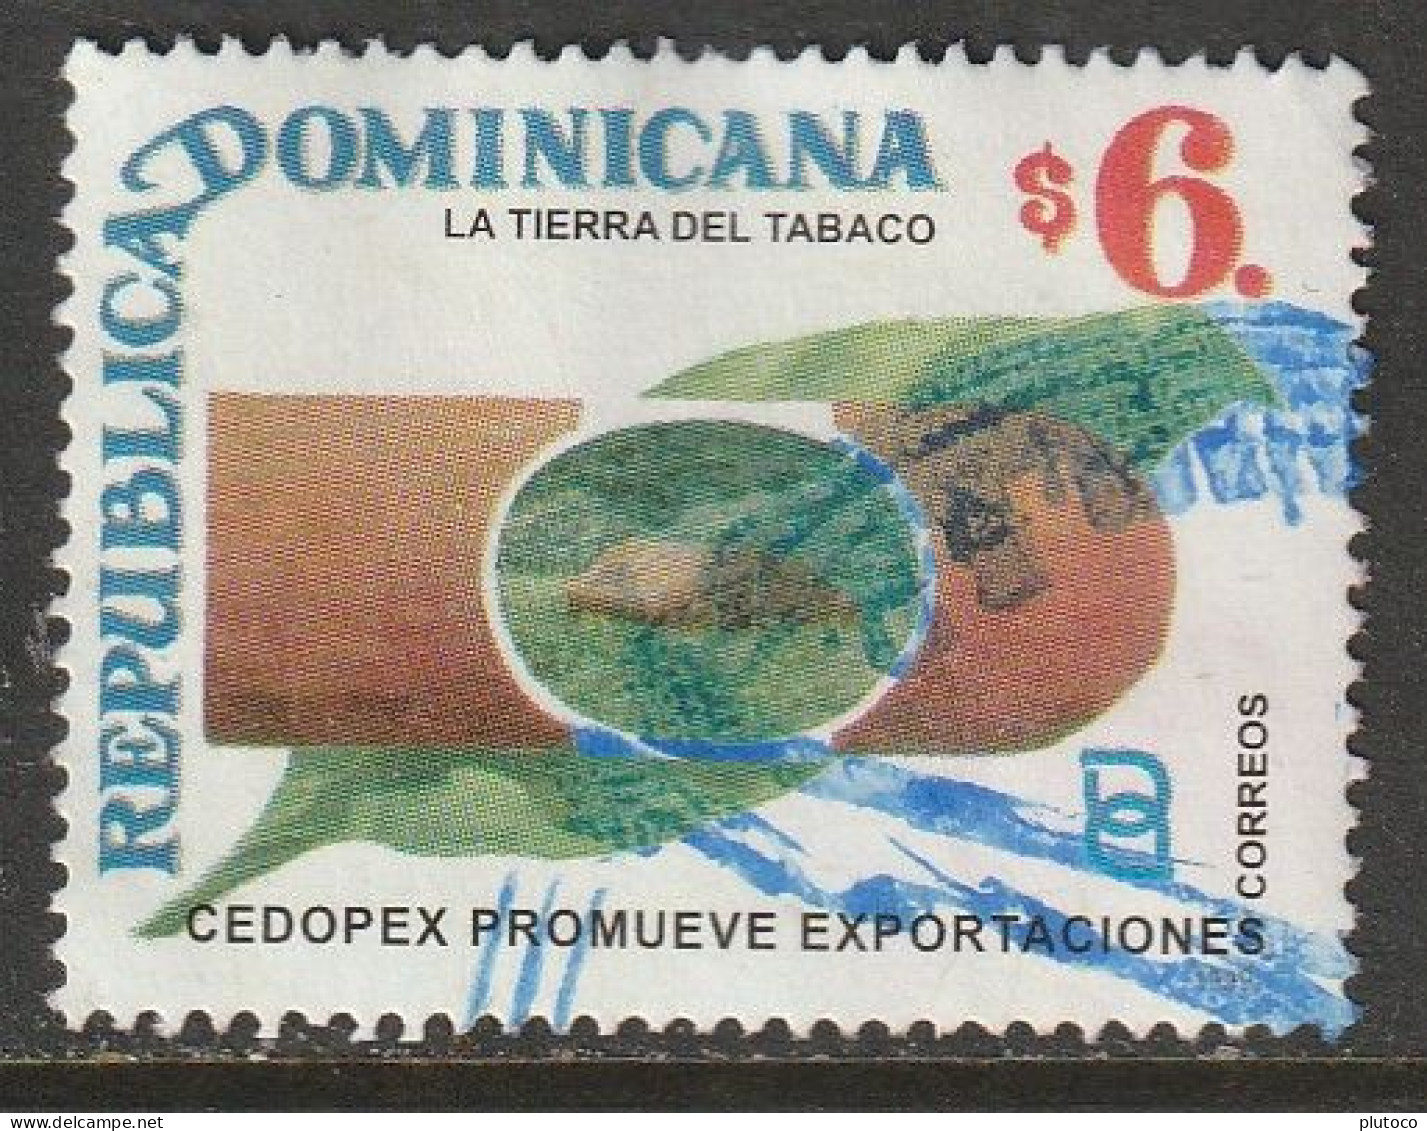 REPÚBLICA DOMINICANA, USED STAMP, OBLITERÉ, SELLO USADO - Dominicaanse Republiek